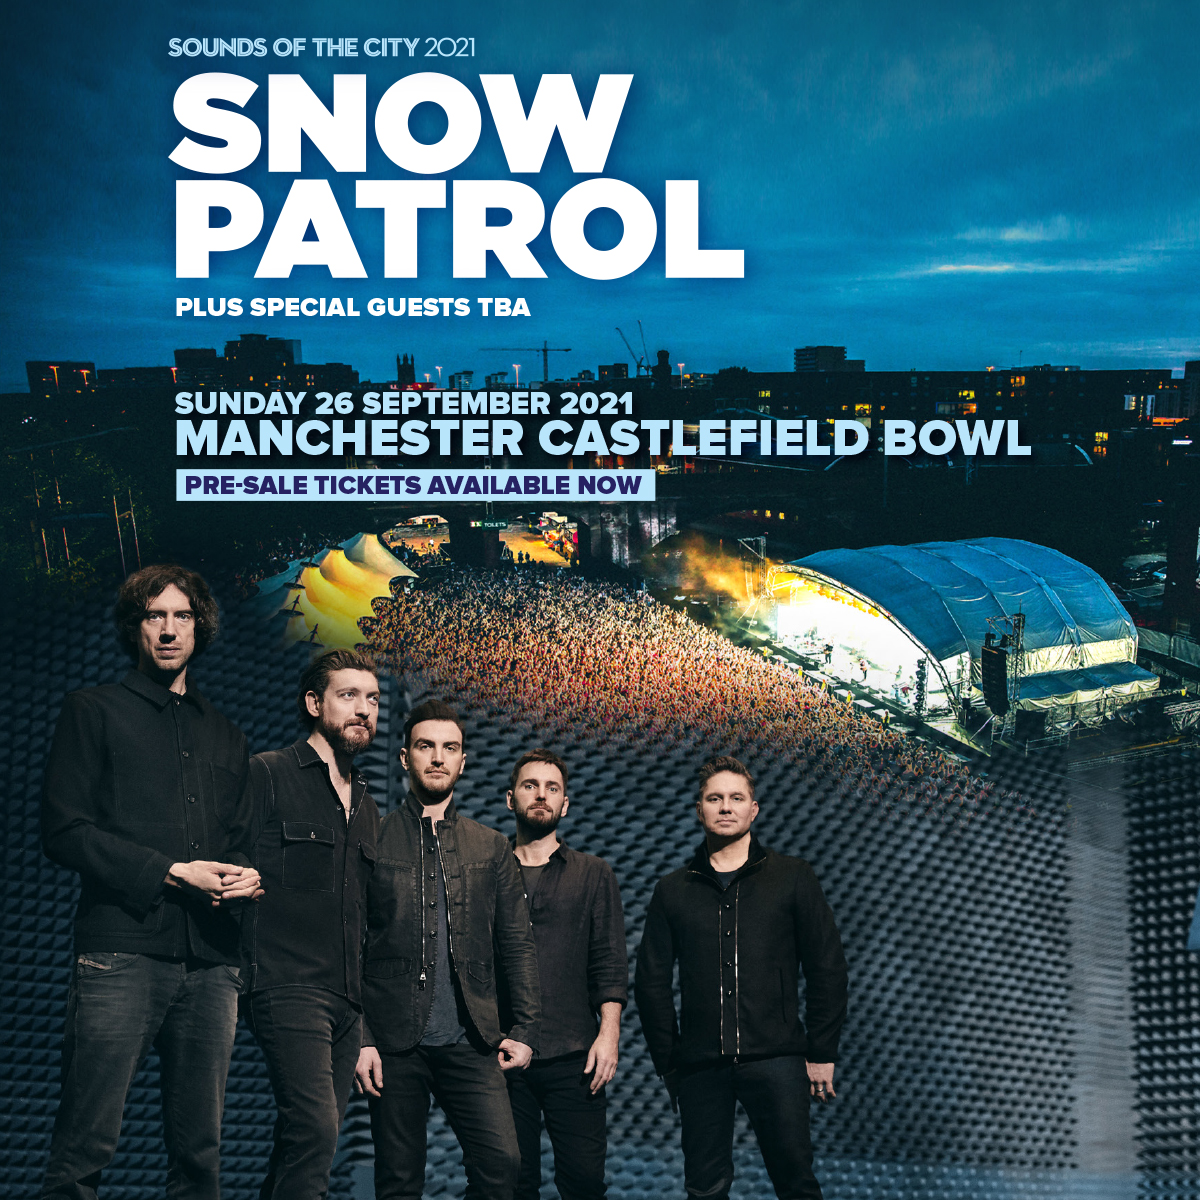 Manchester Castlefield Bowl pre-sale link live!